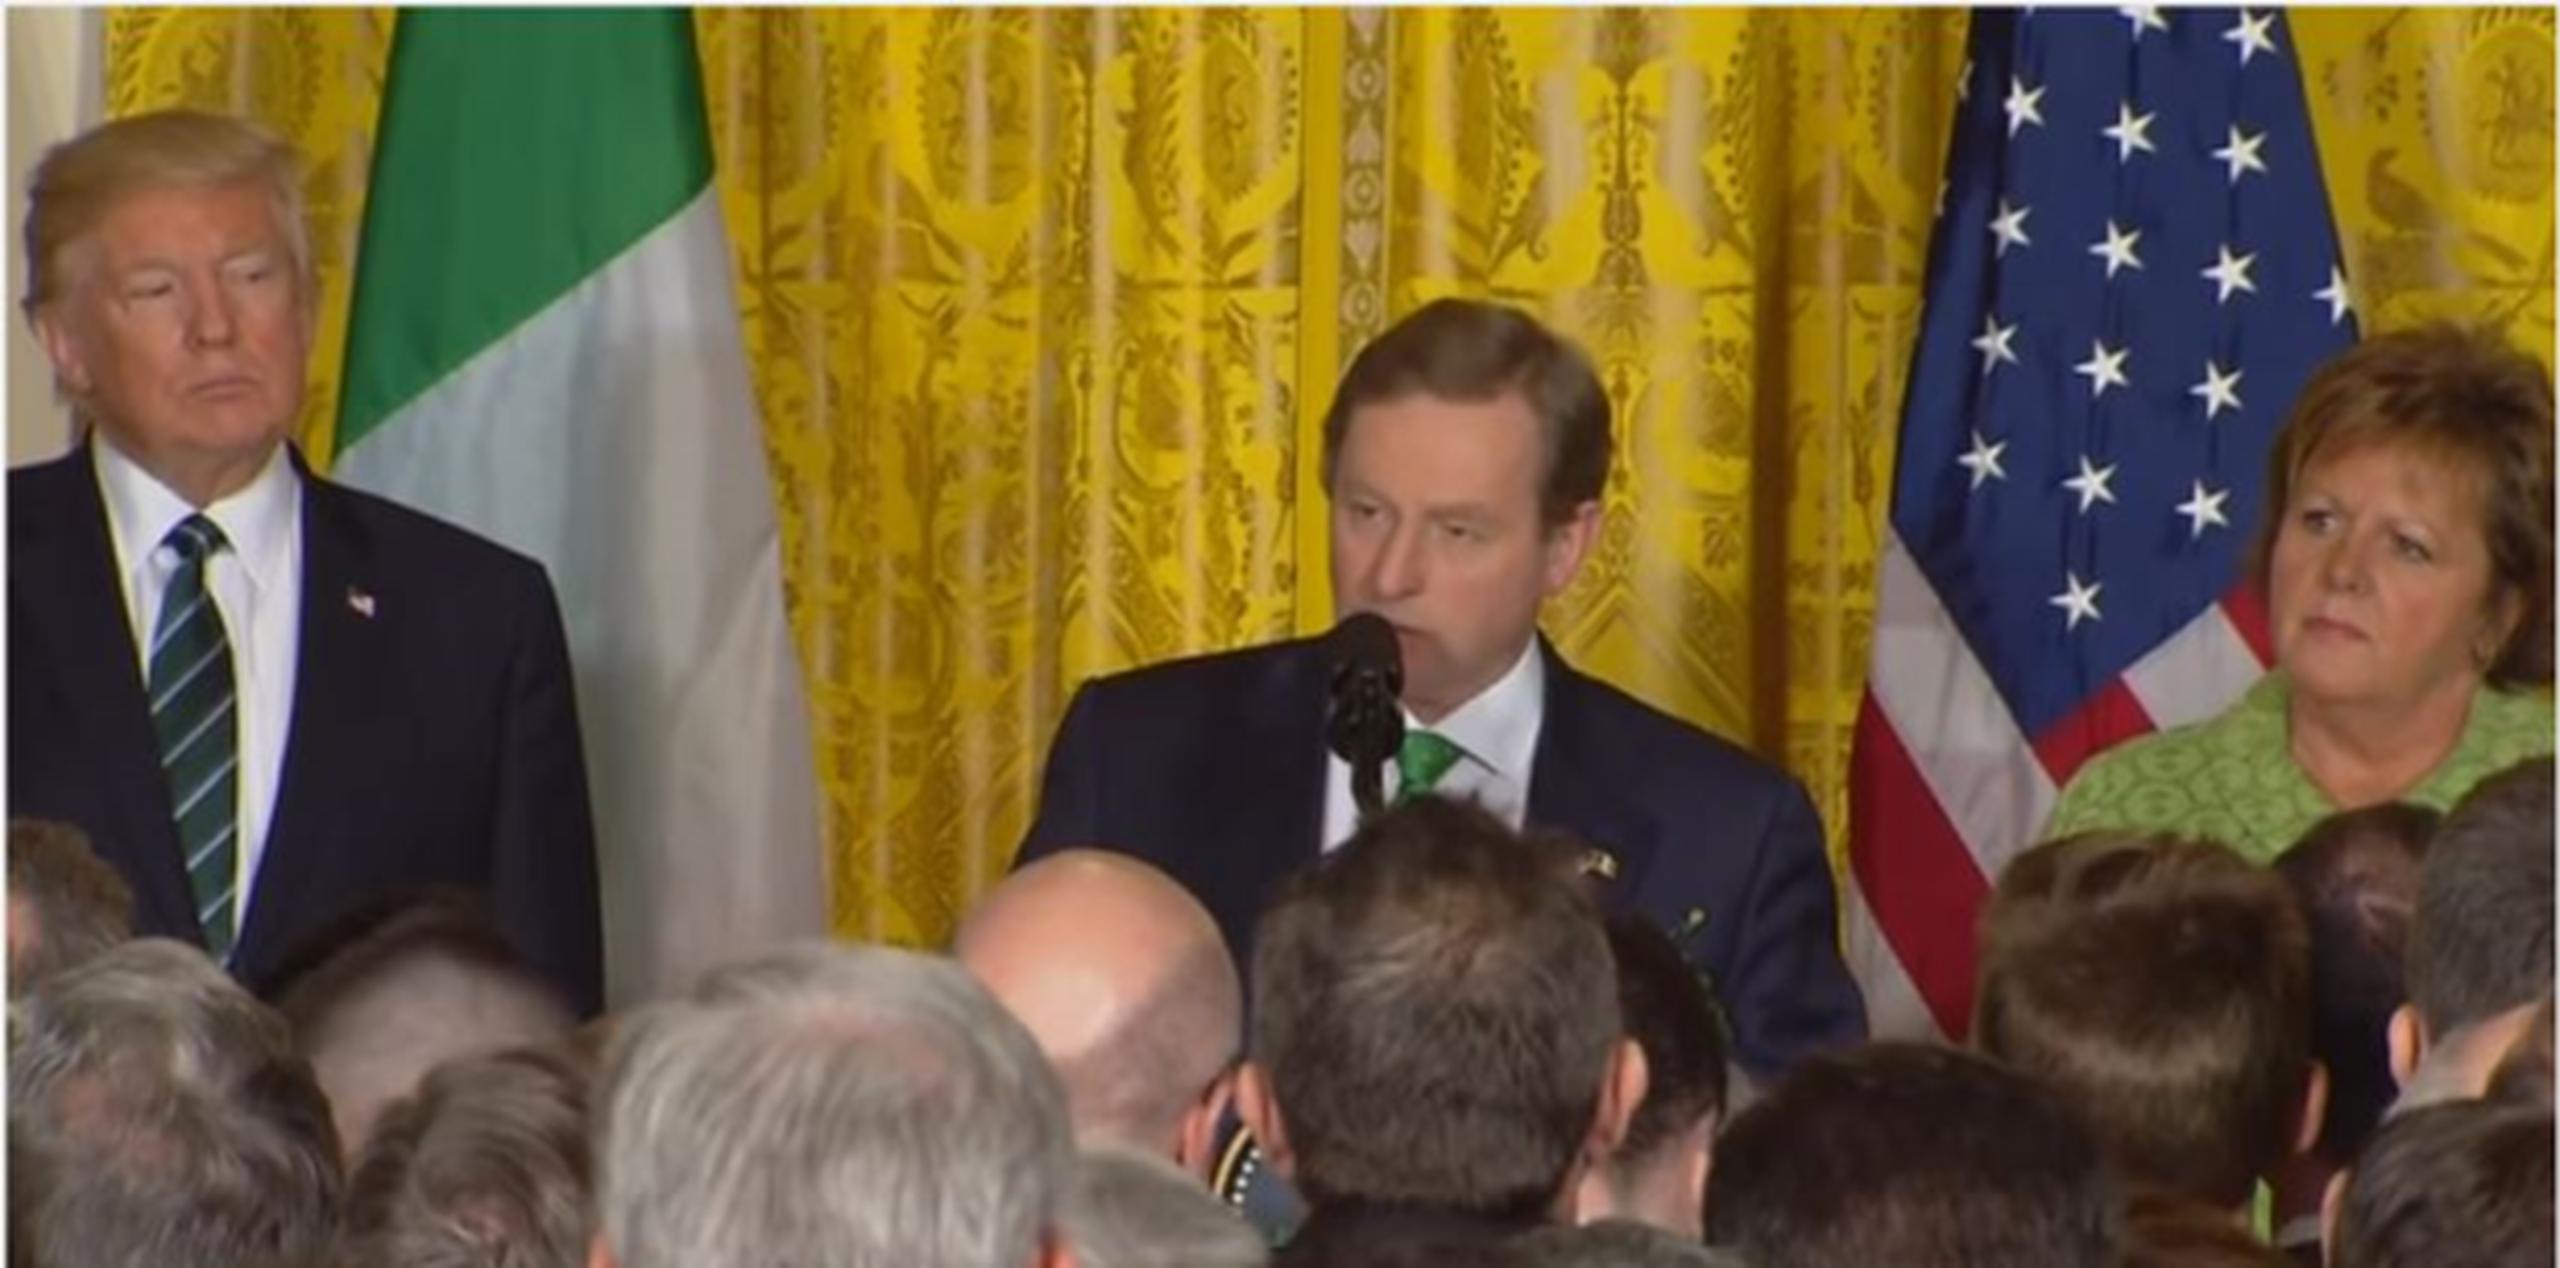 El primer ministro irlandés Enda Kenny le recordó a Donald Trump que los irlandeses fueron antaño inmigrantes rechazados pero han aportado en grande a la nación estadounidense. (Captura/YouTube)